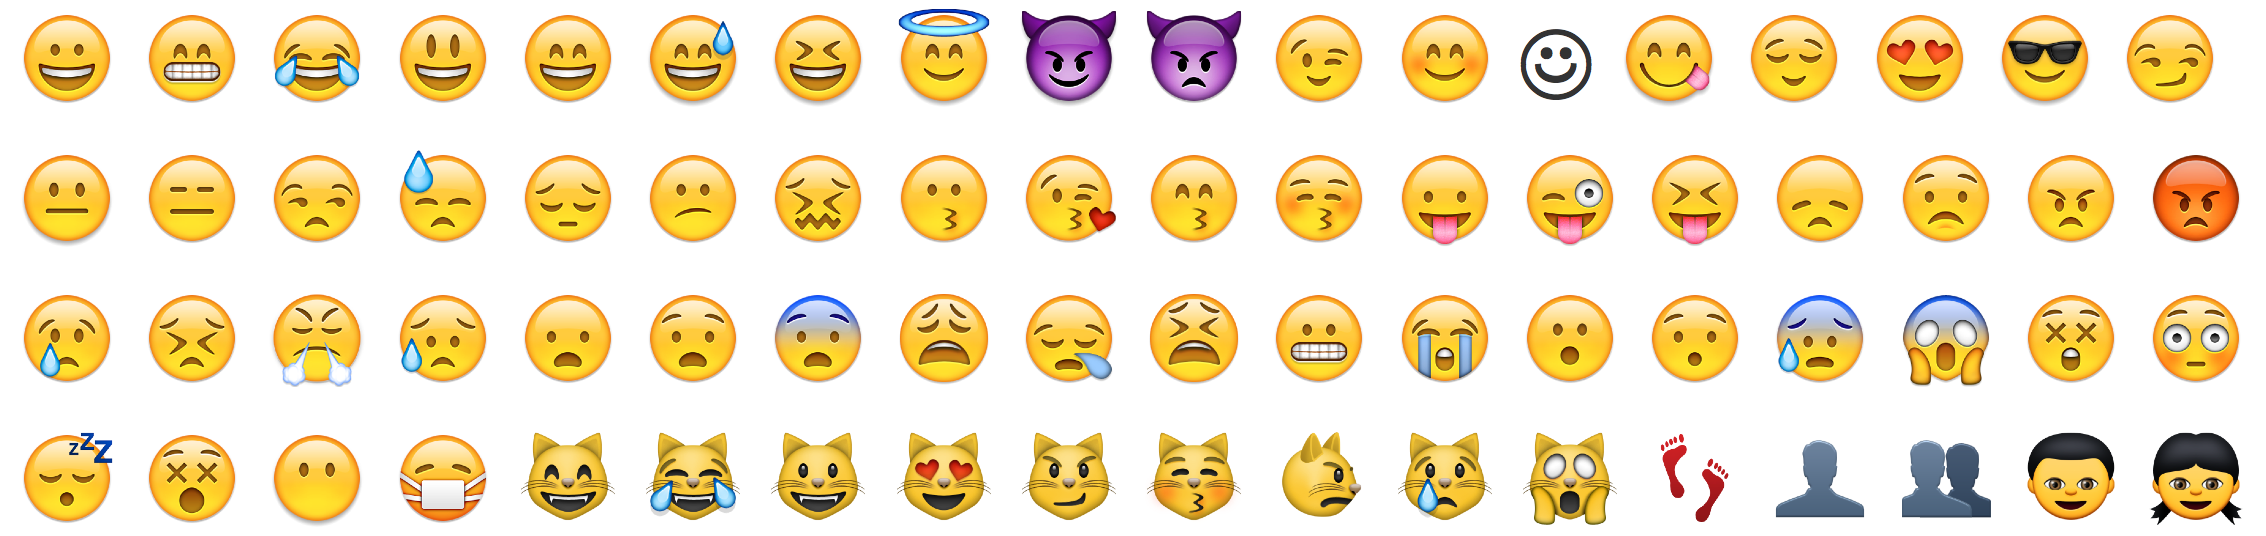 Image displaying various emoji.